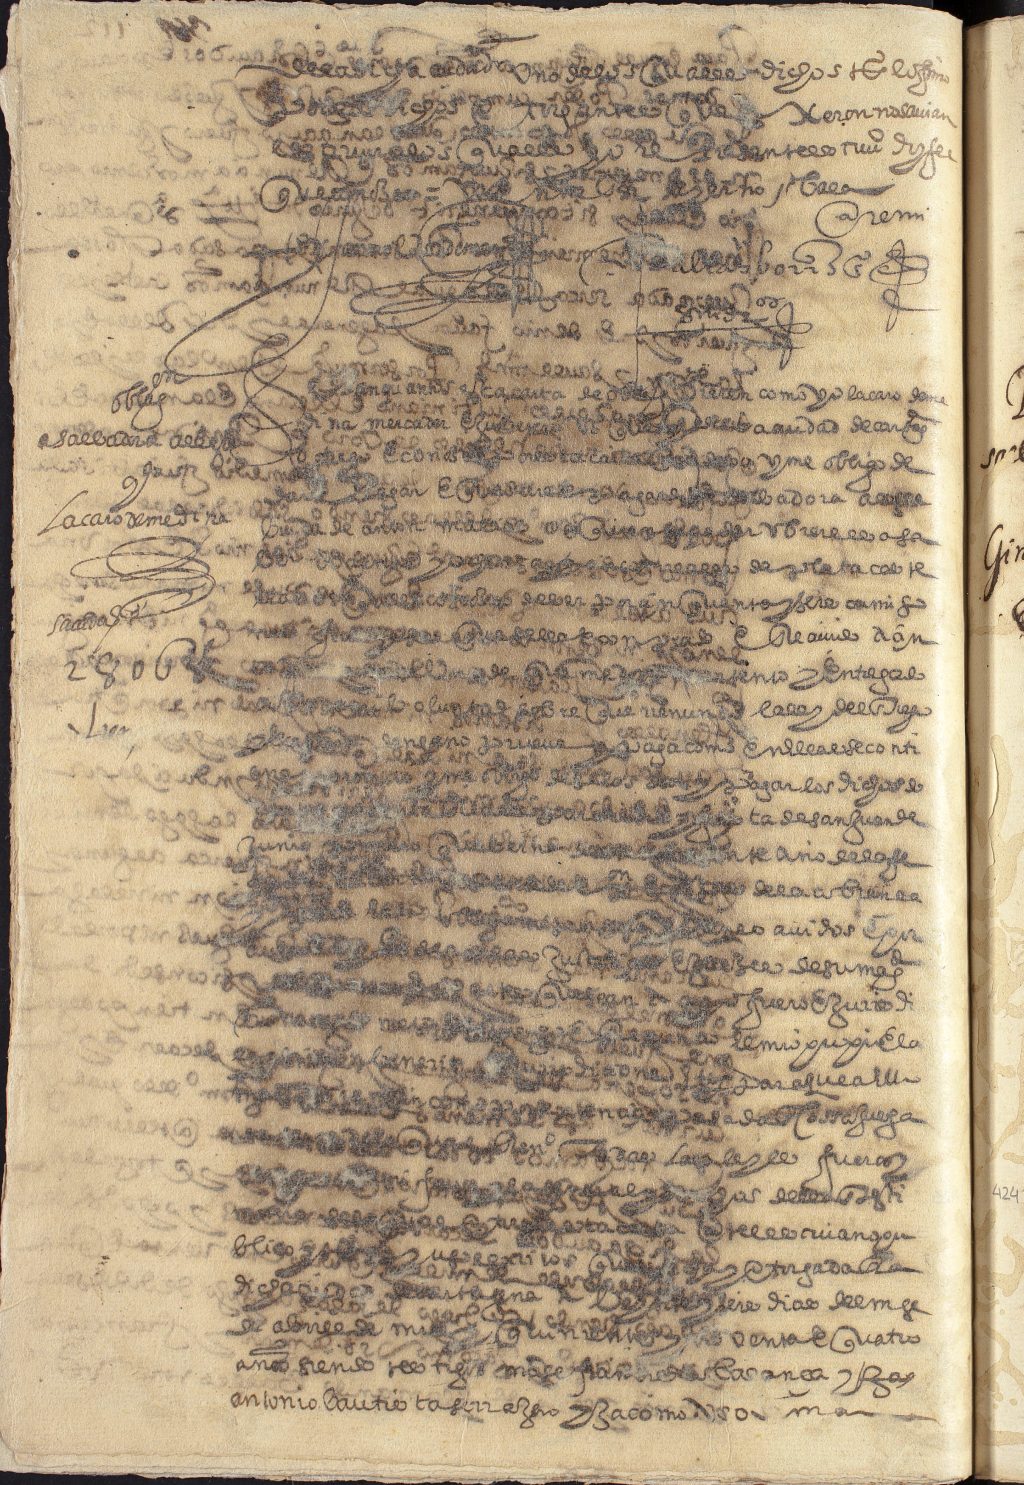 Registro de Baltasar Borrás, Cartagena. Años 1593-1595.